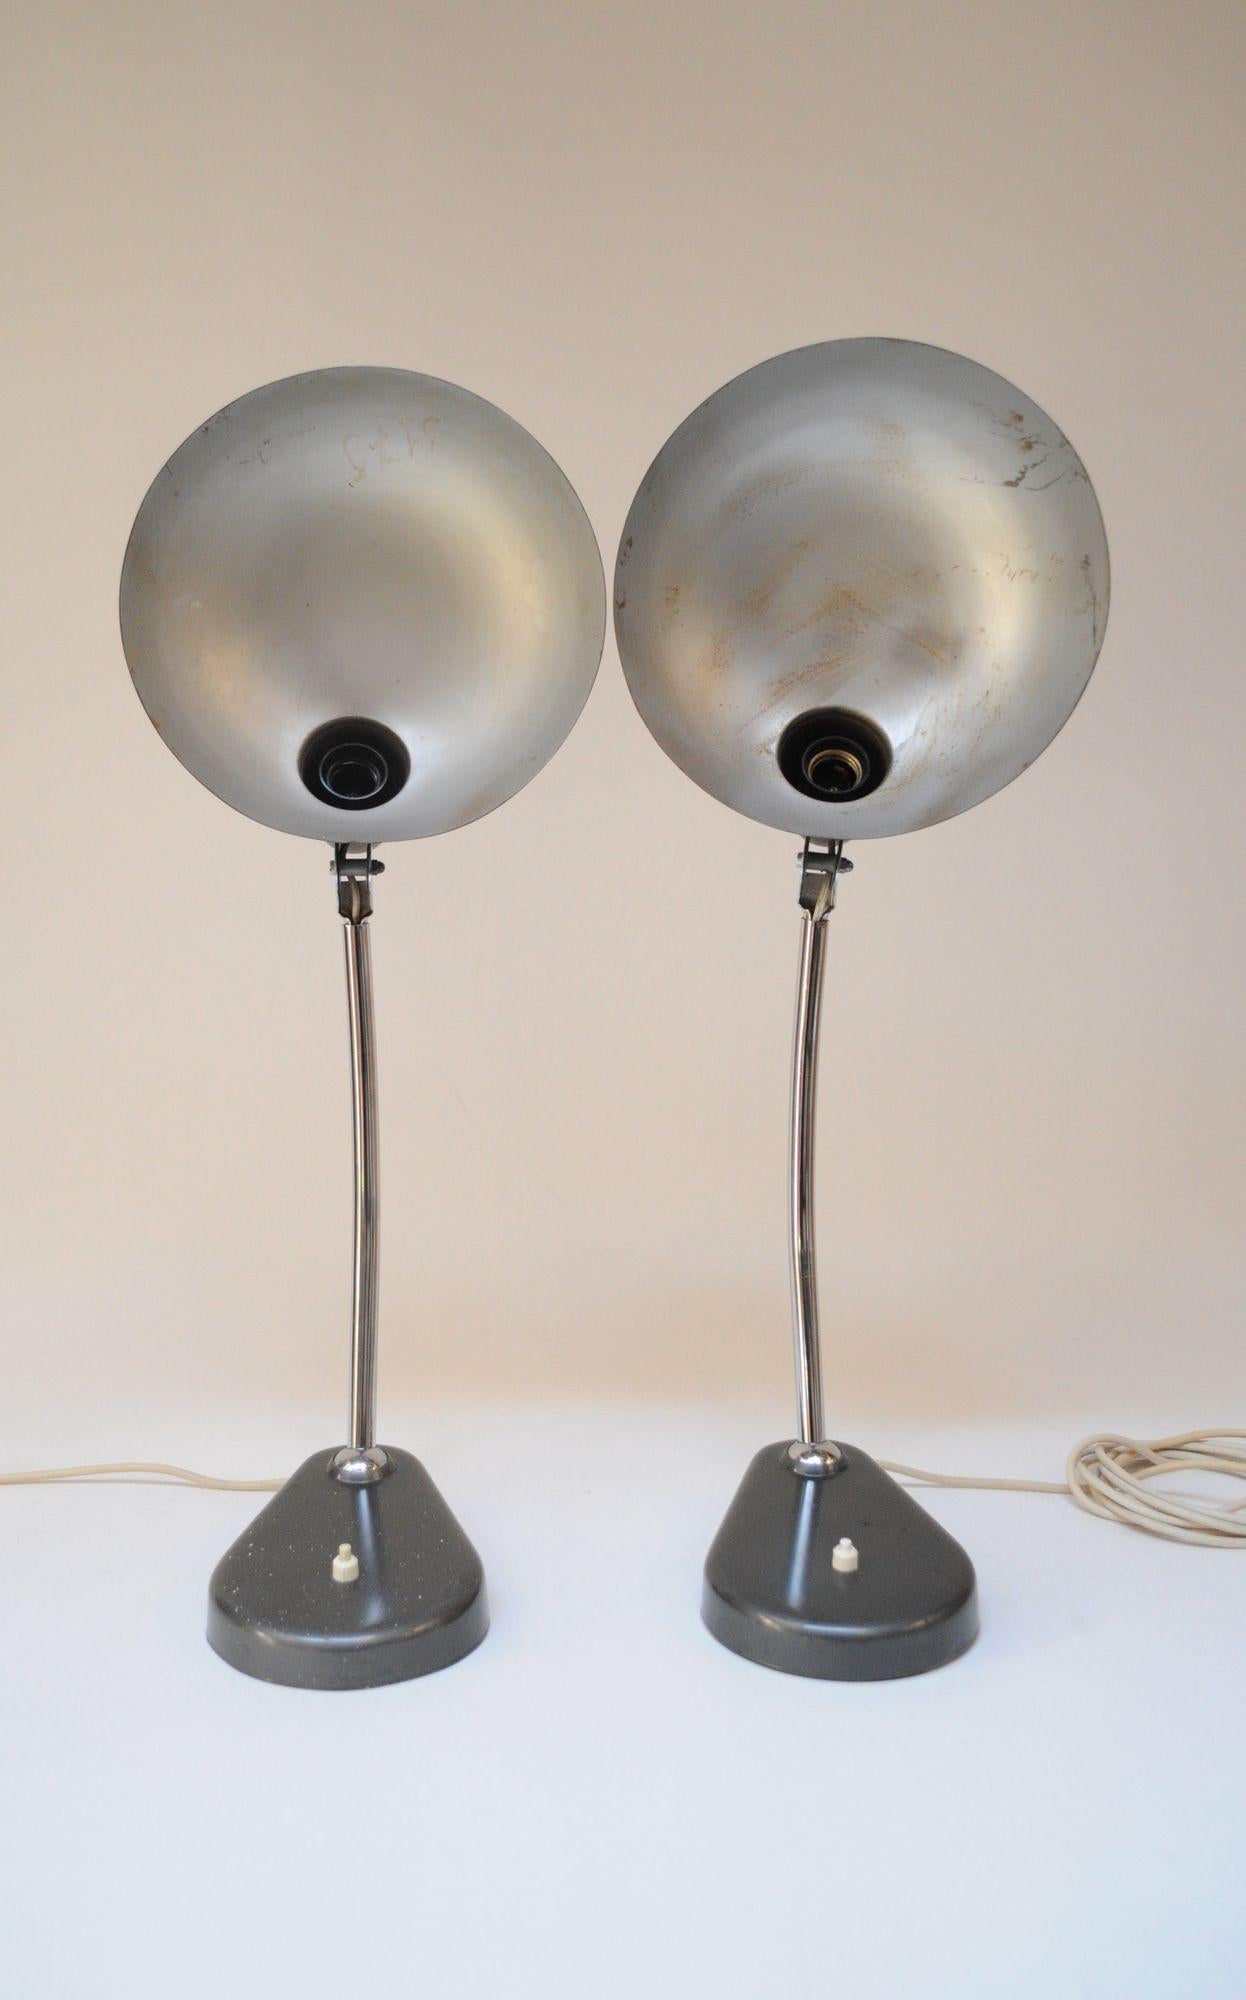 Pair of Vintage Italian Modern Industrial Chromed-Metal Task Lamps by Seminara For Sale 1